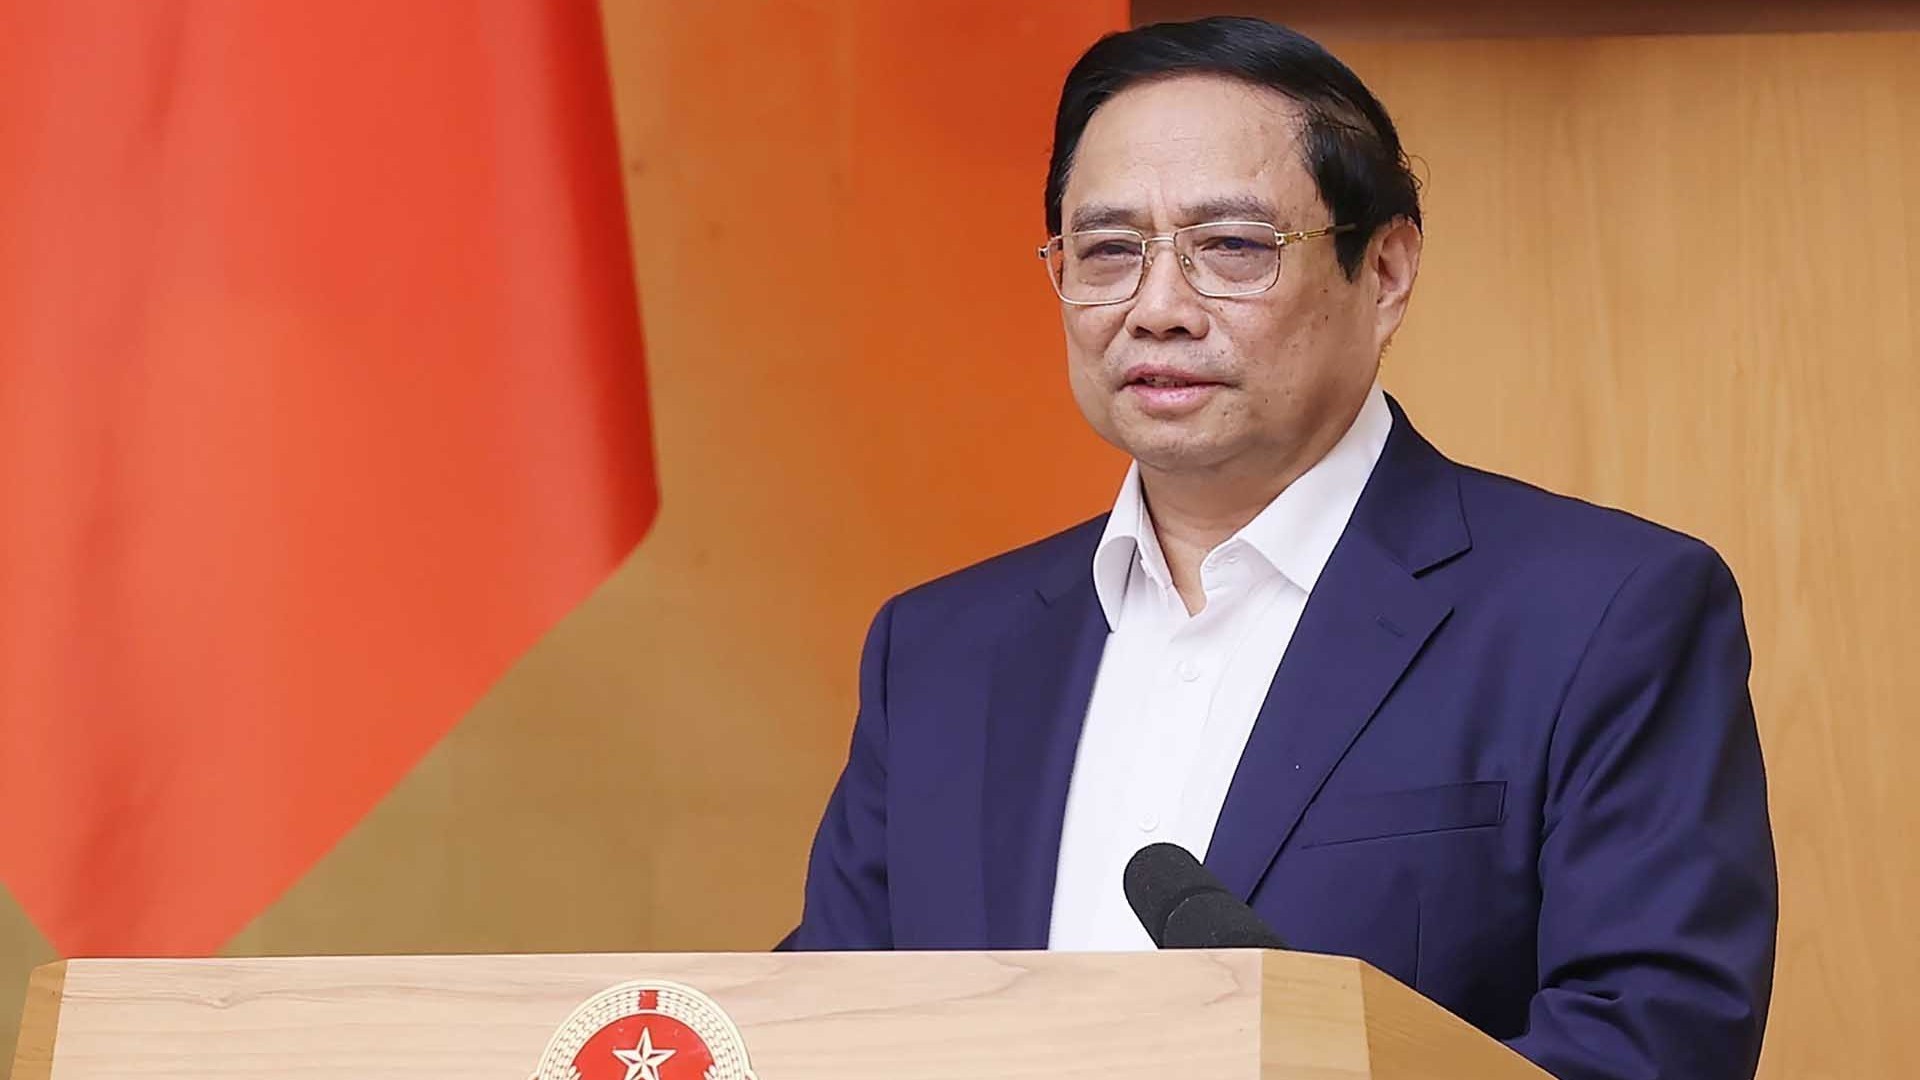 Thủ tướng Chính phủ Phạm Minh Chính sẽ dự Hội nghị cấp cao ASEAN - Nhật Bản